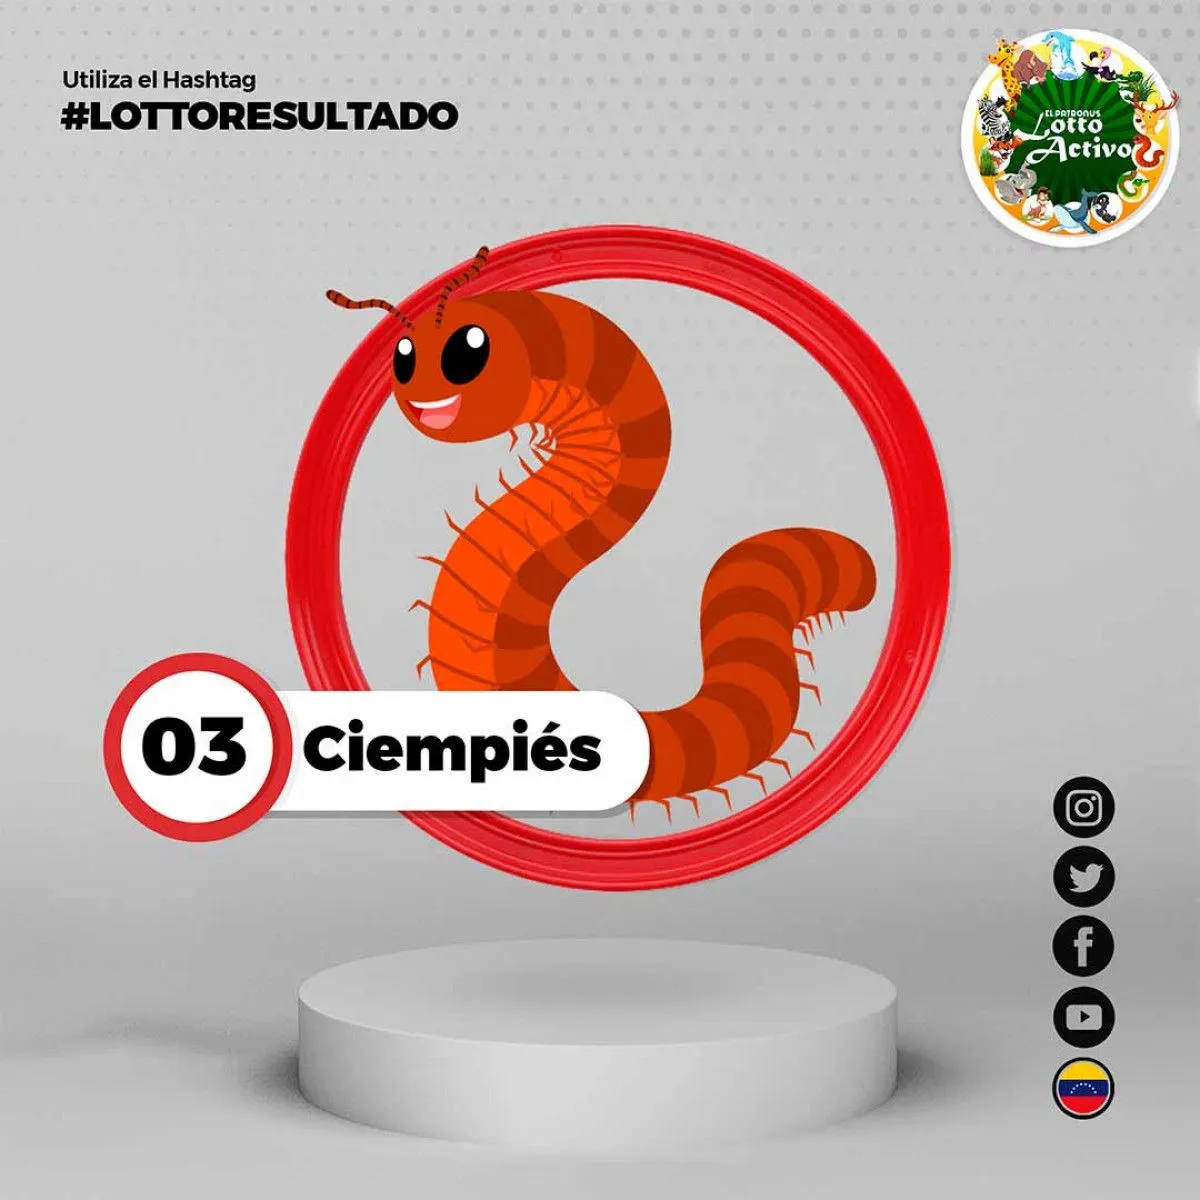 Resultados Lotto Activo y La Granjita EN VIVO hoy, sábado 19 de agosto |  Ver los datos explosivos de la granjita y lotto activo animalitos |  resultados de hoy lotería | Venezuela |